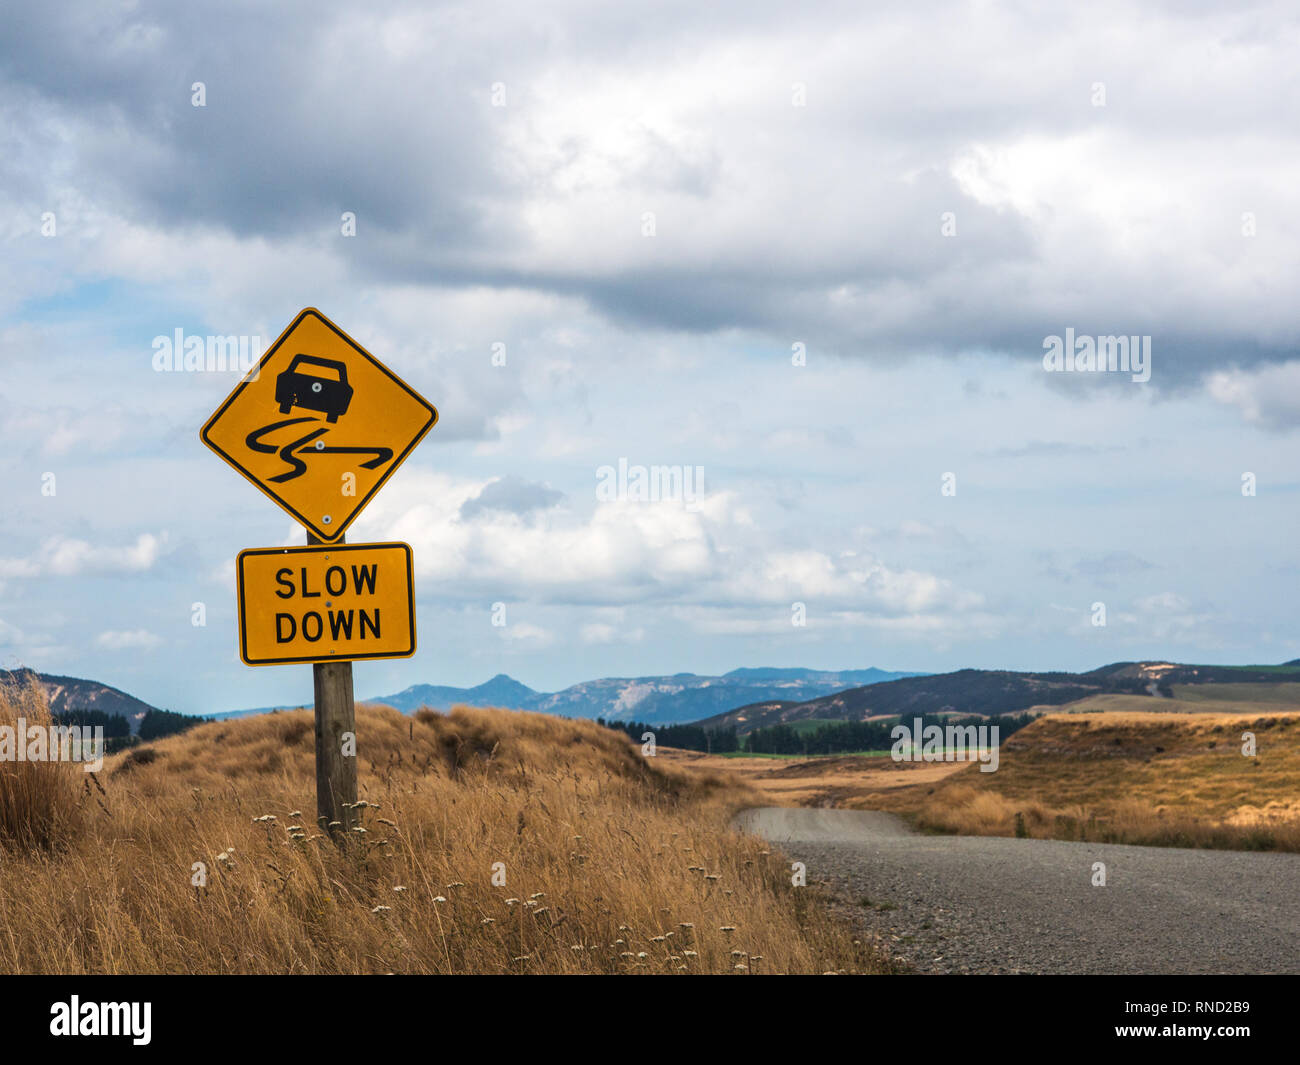 Ralentir panneau routier d'avertissement, les scellés sur gravier, Ngamatea, Inland Mokai Patea, Central North Island, Nouvelle-Zélande Banque D'Images